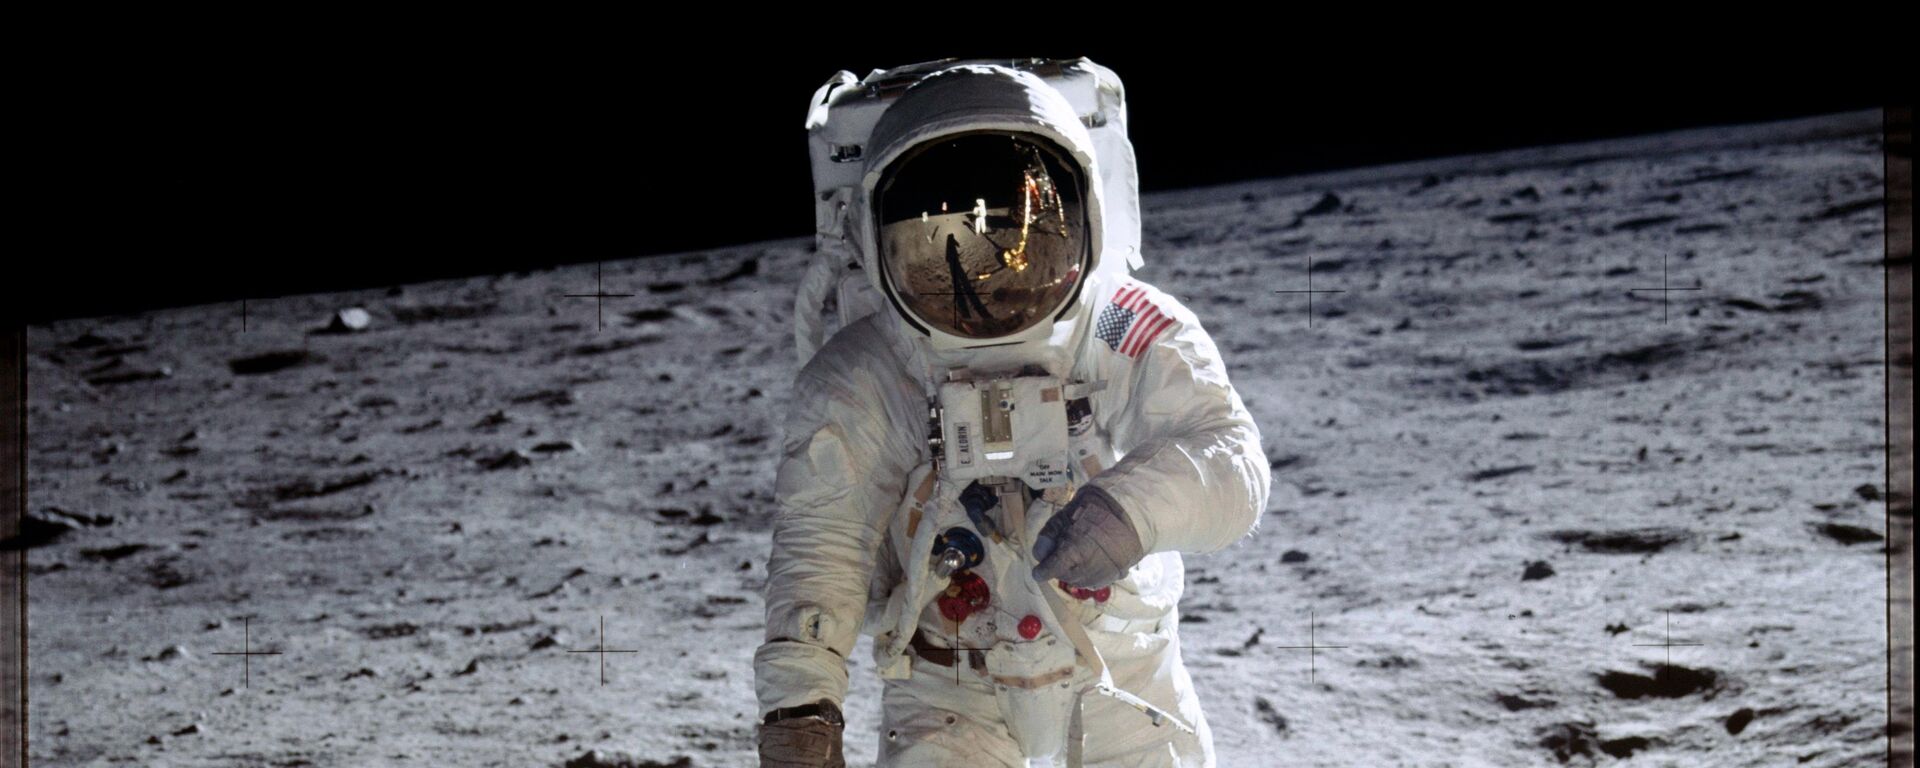 O astronauta Aldrin anda sobre a superfície da lua durante a missão Apollo 11 - Sputnik Brasil, 1920, 15.06.2021